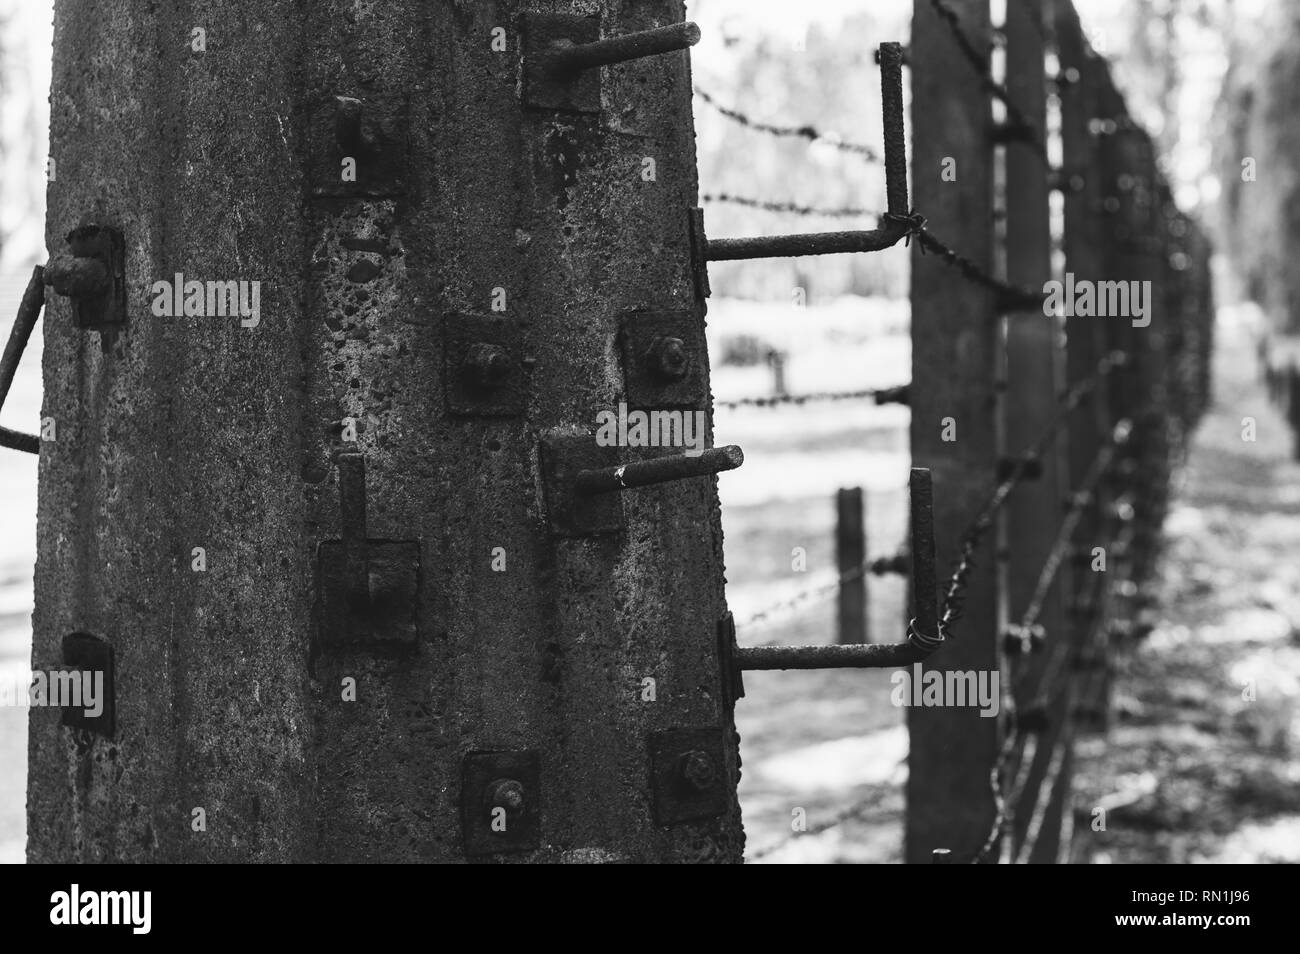 Destroyed barracks inside Auschwitz - Birkenau concentration camp near Krakow, Poland Stock Photo